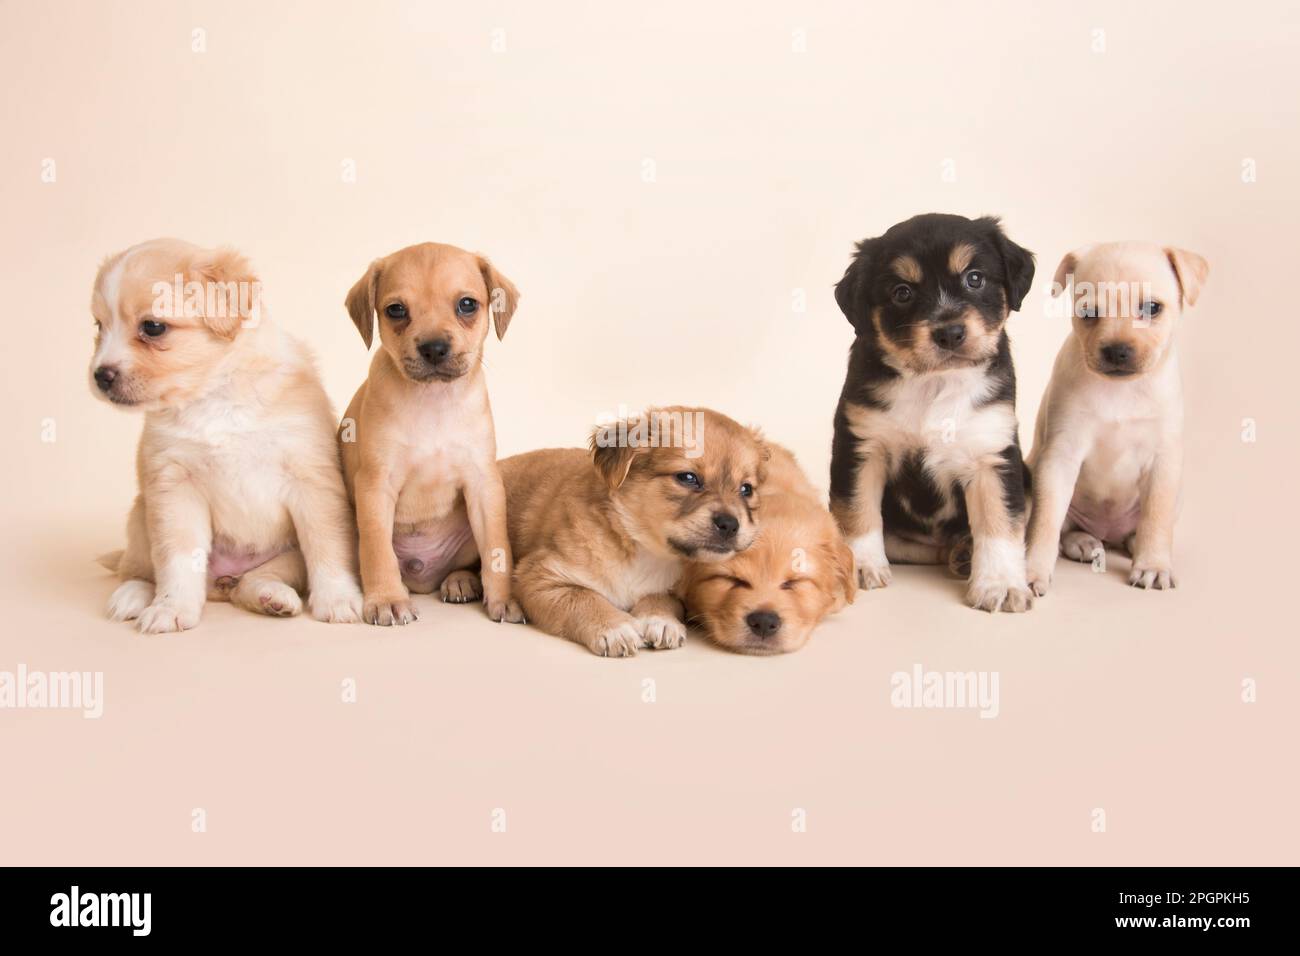 cachorros de perros peruanos de raza mixta Foto de stock